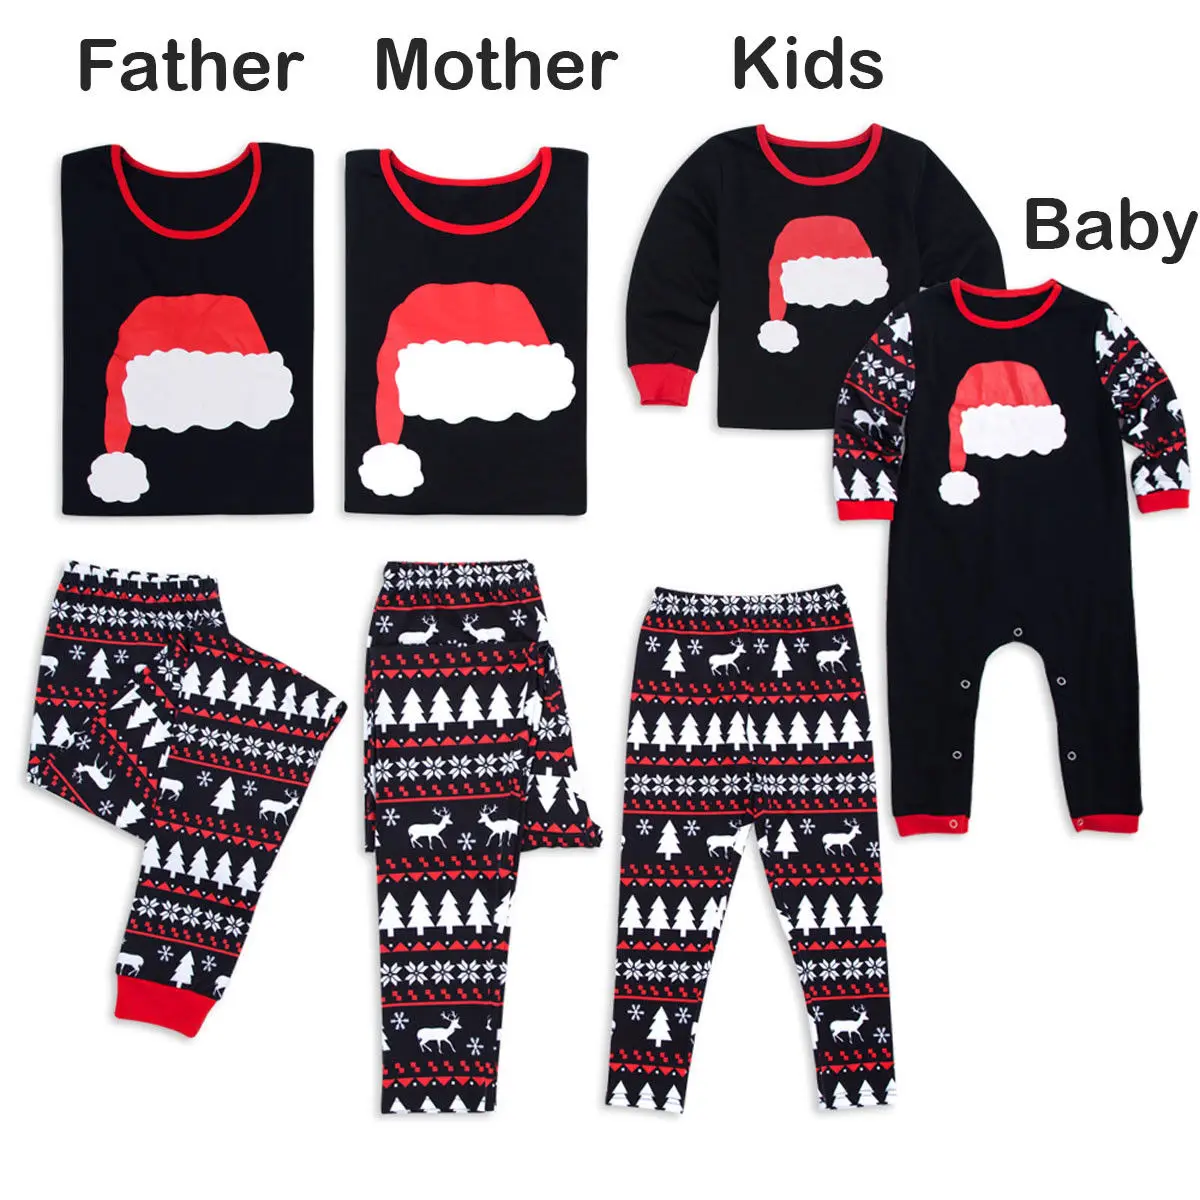 Рождественские одинаковые пижамы для всей семьи, одежда для мамы, папы, рождественские пижамы, комплекты пижам, Рождественская одежда для сна, домашняя одежда, фотография, реквизит